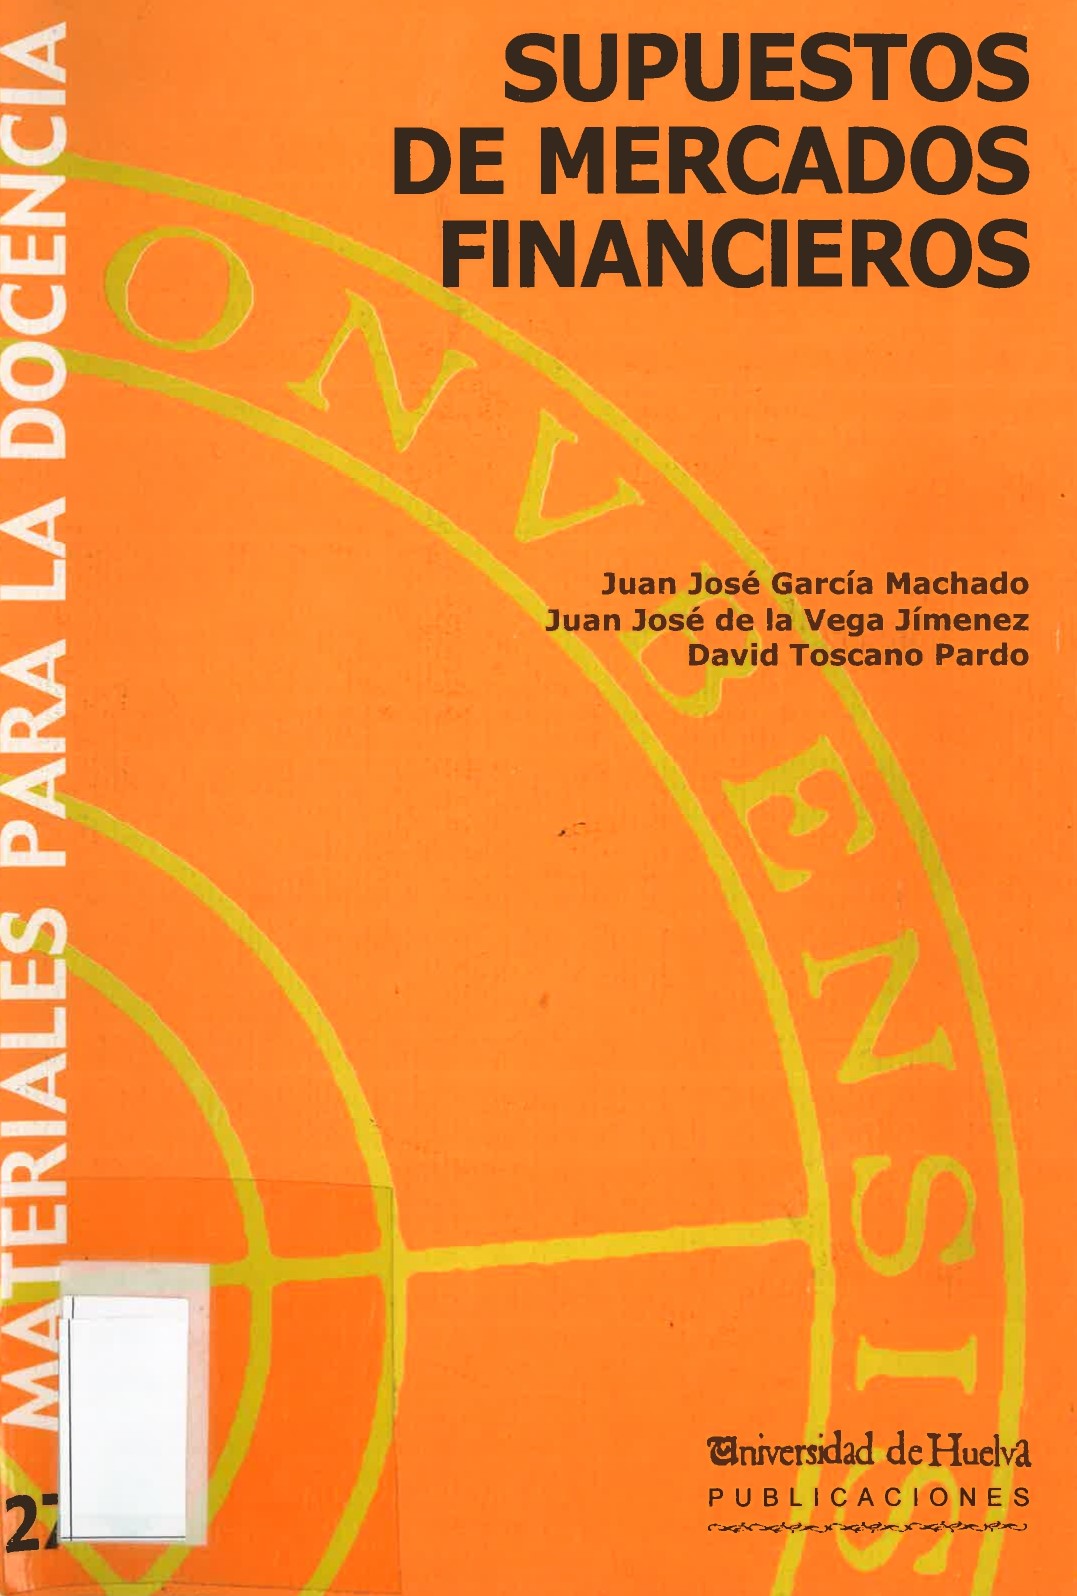 Imagen de portada del libro Supuestos de mercados financieros.